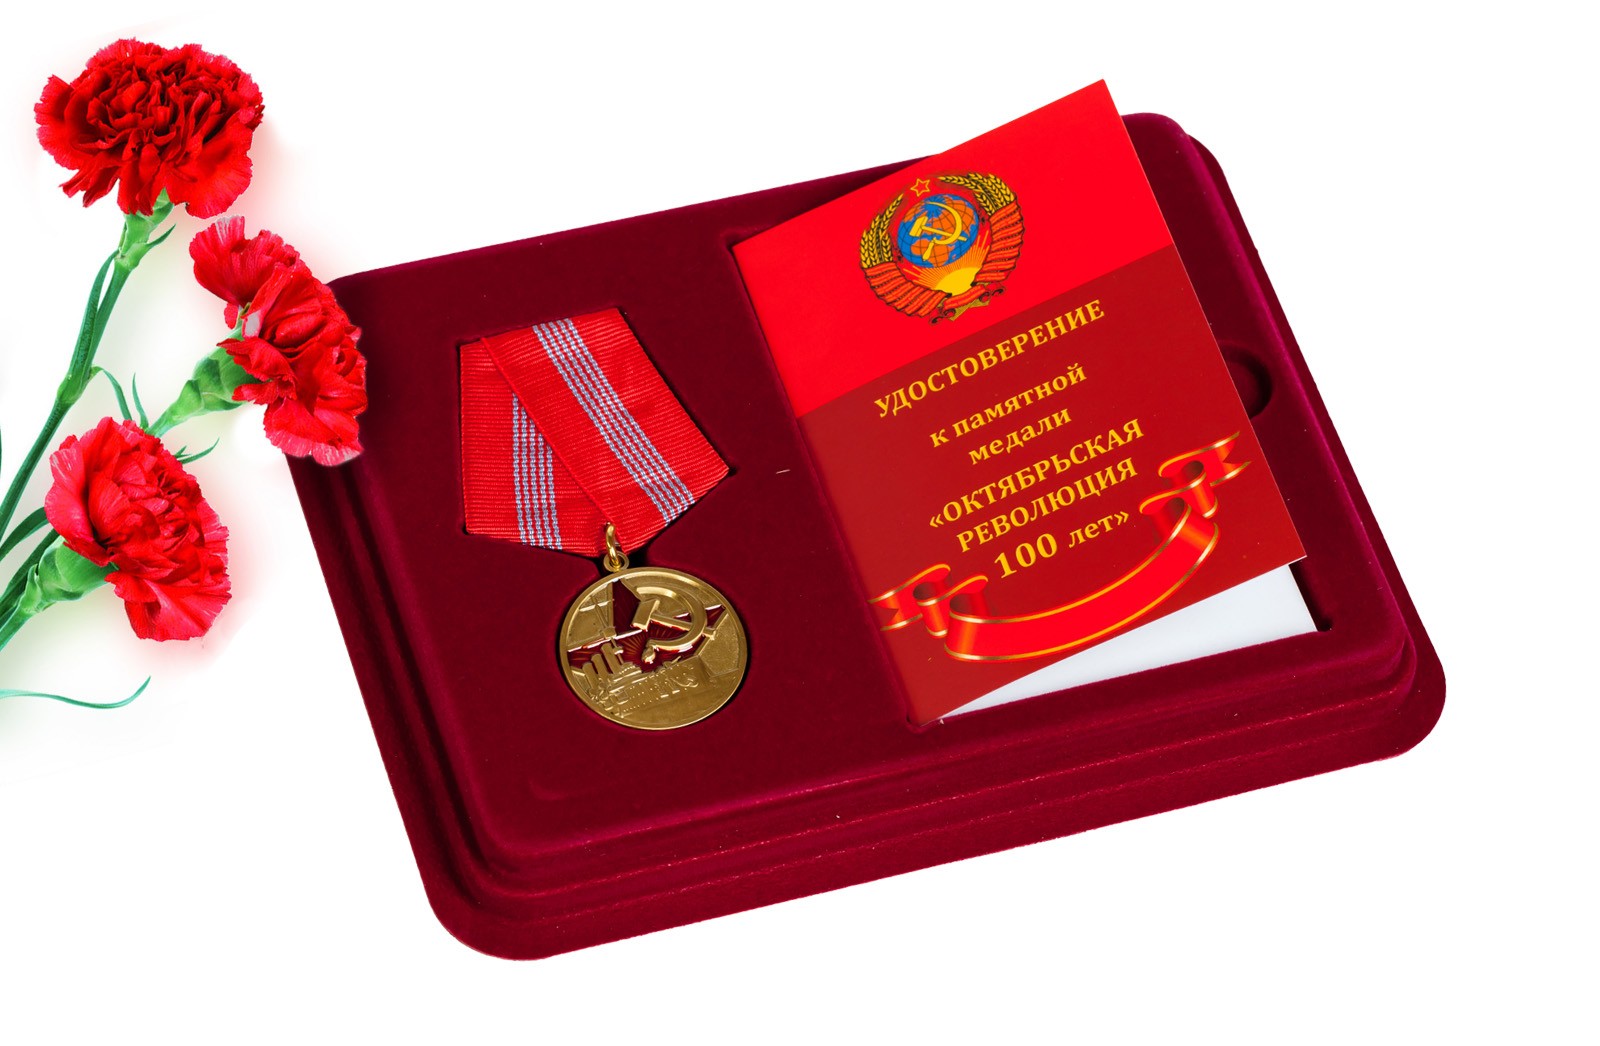 Купить юбилейную медаль 100 лет Великой Октябрьской Революции в подарок